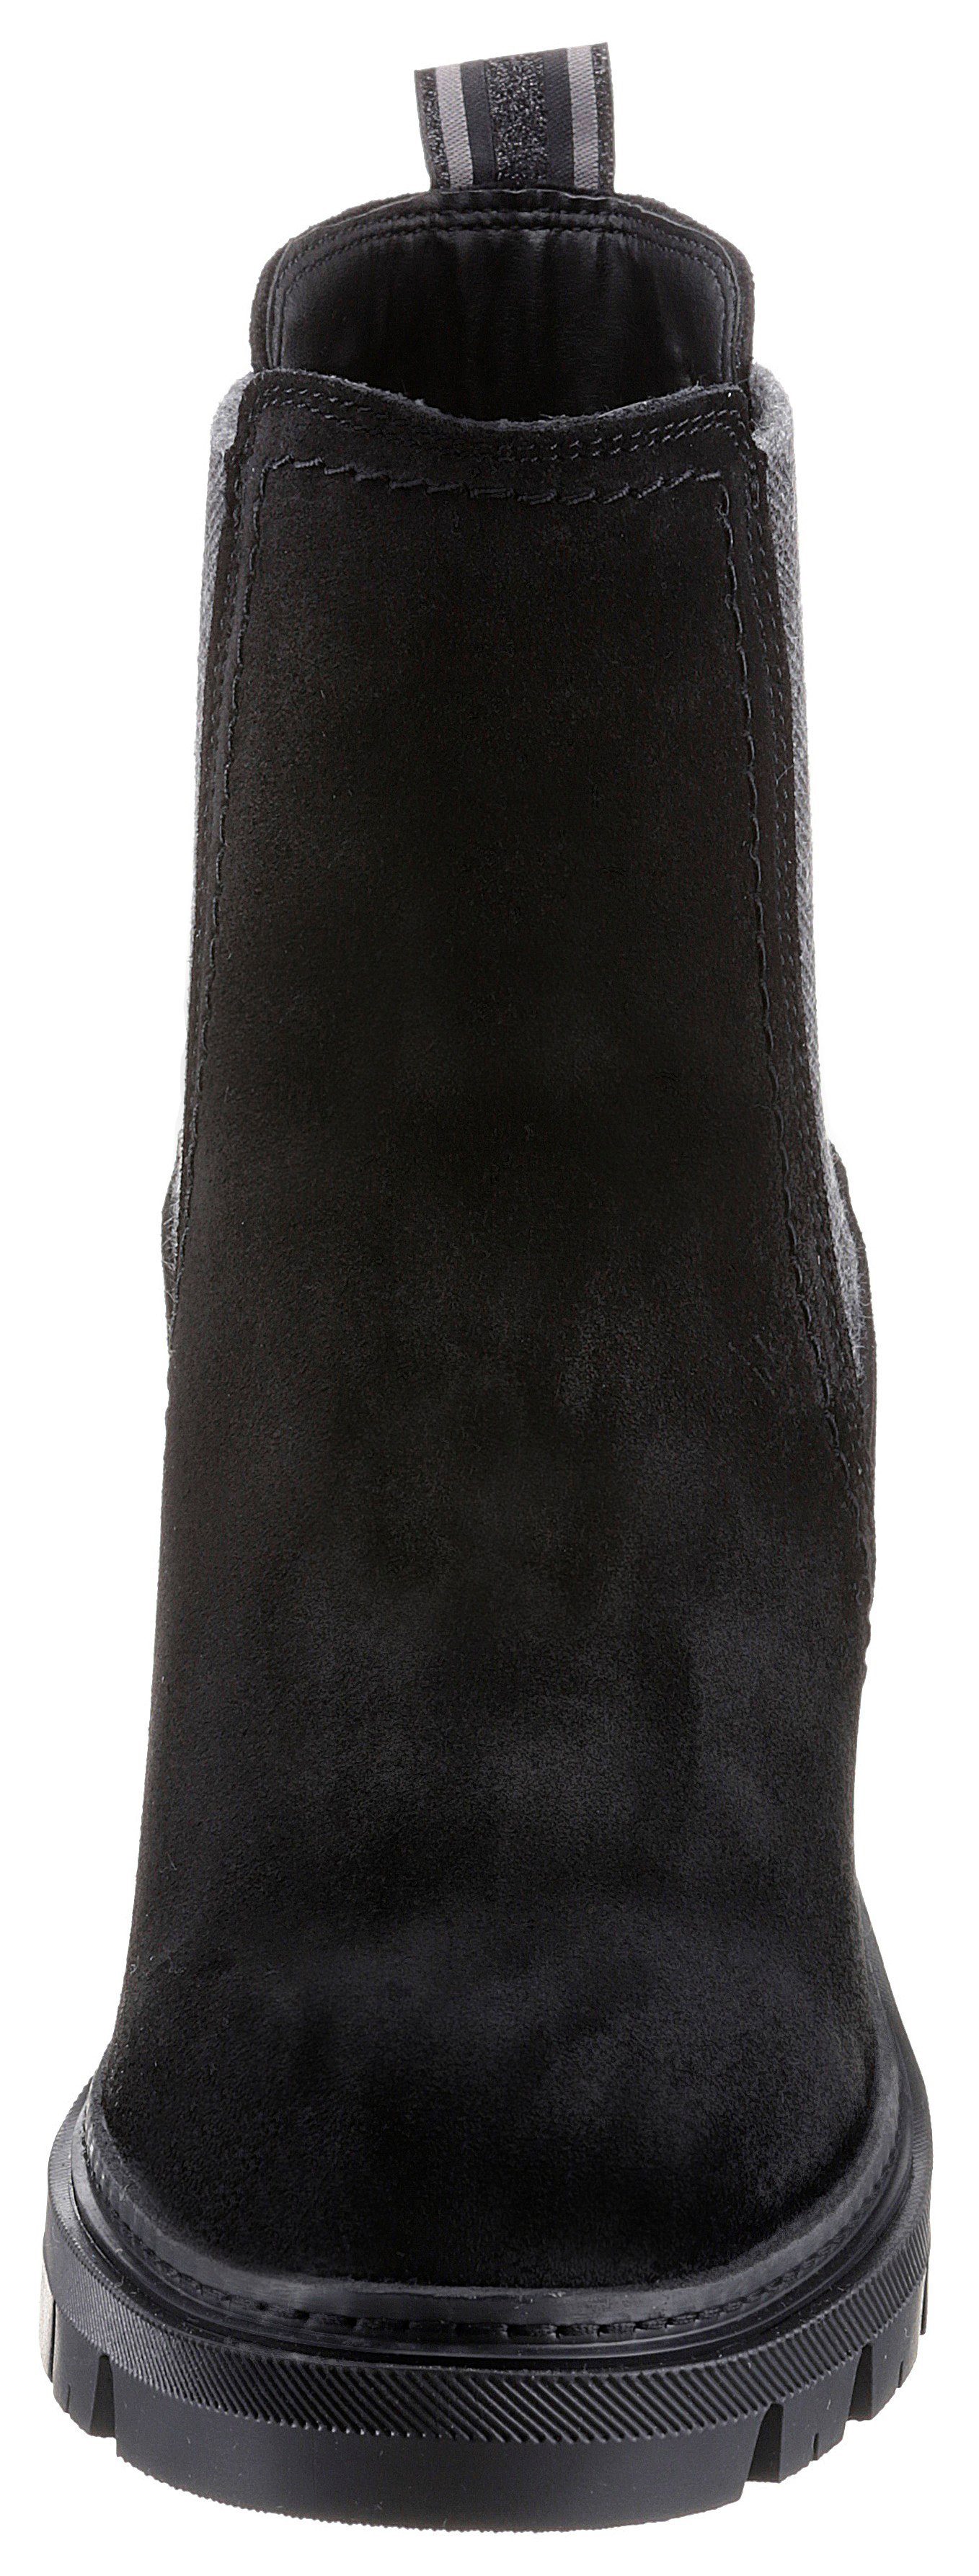 Stiefelette Tamaris Panna mit Streifenbesatz schwarz trendigen